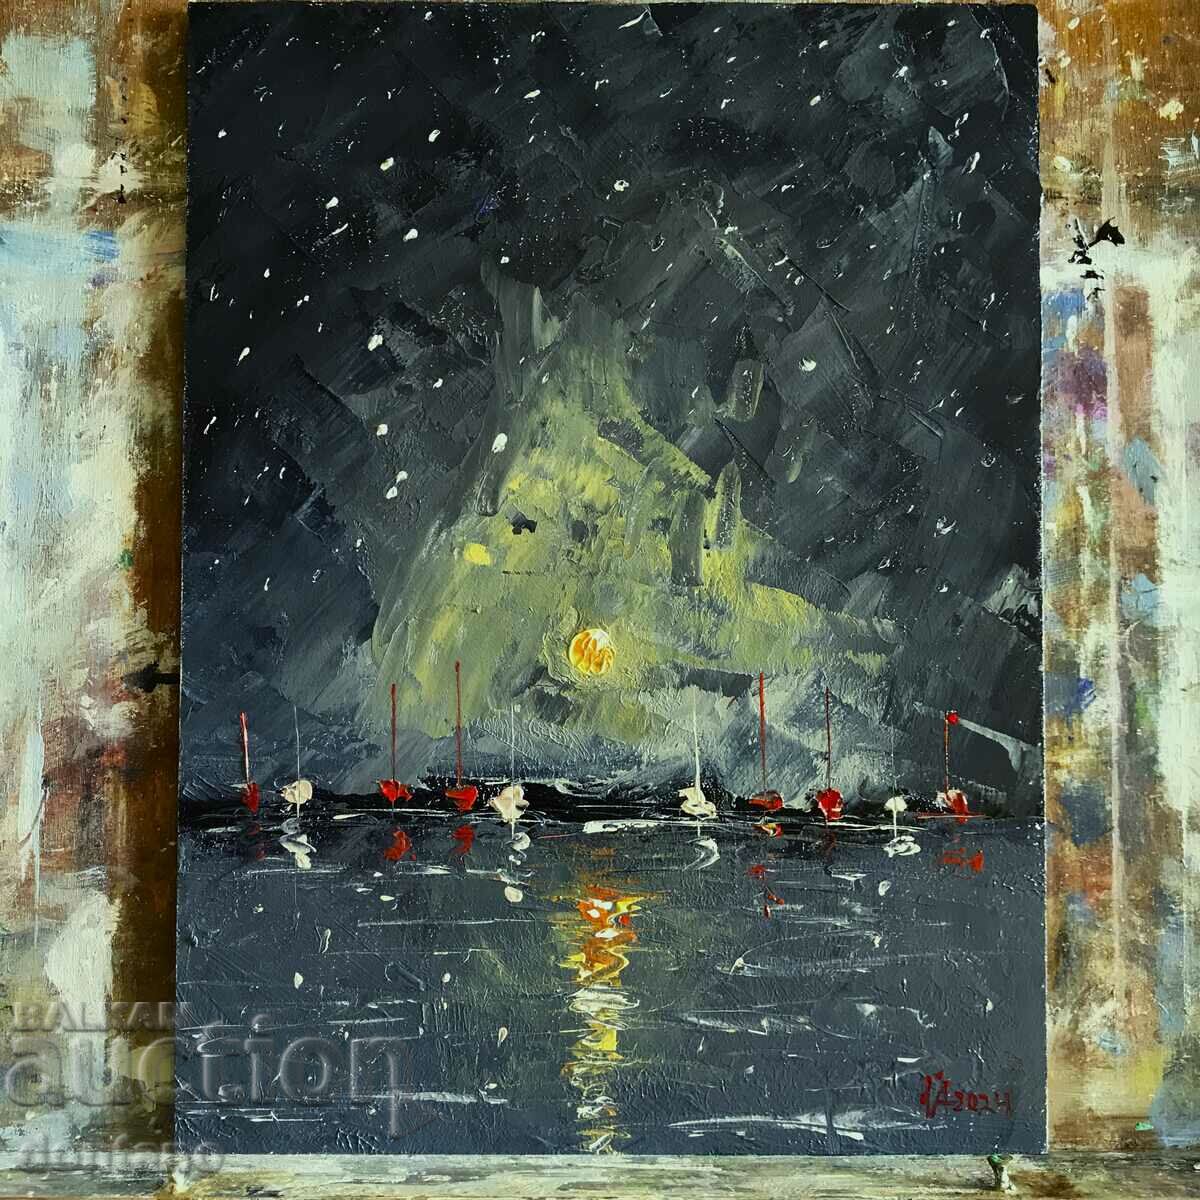 Mаслена картина  - Морски пейзаж - Лодки в нощта  24/ 18 см